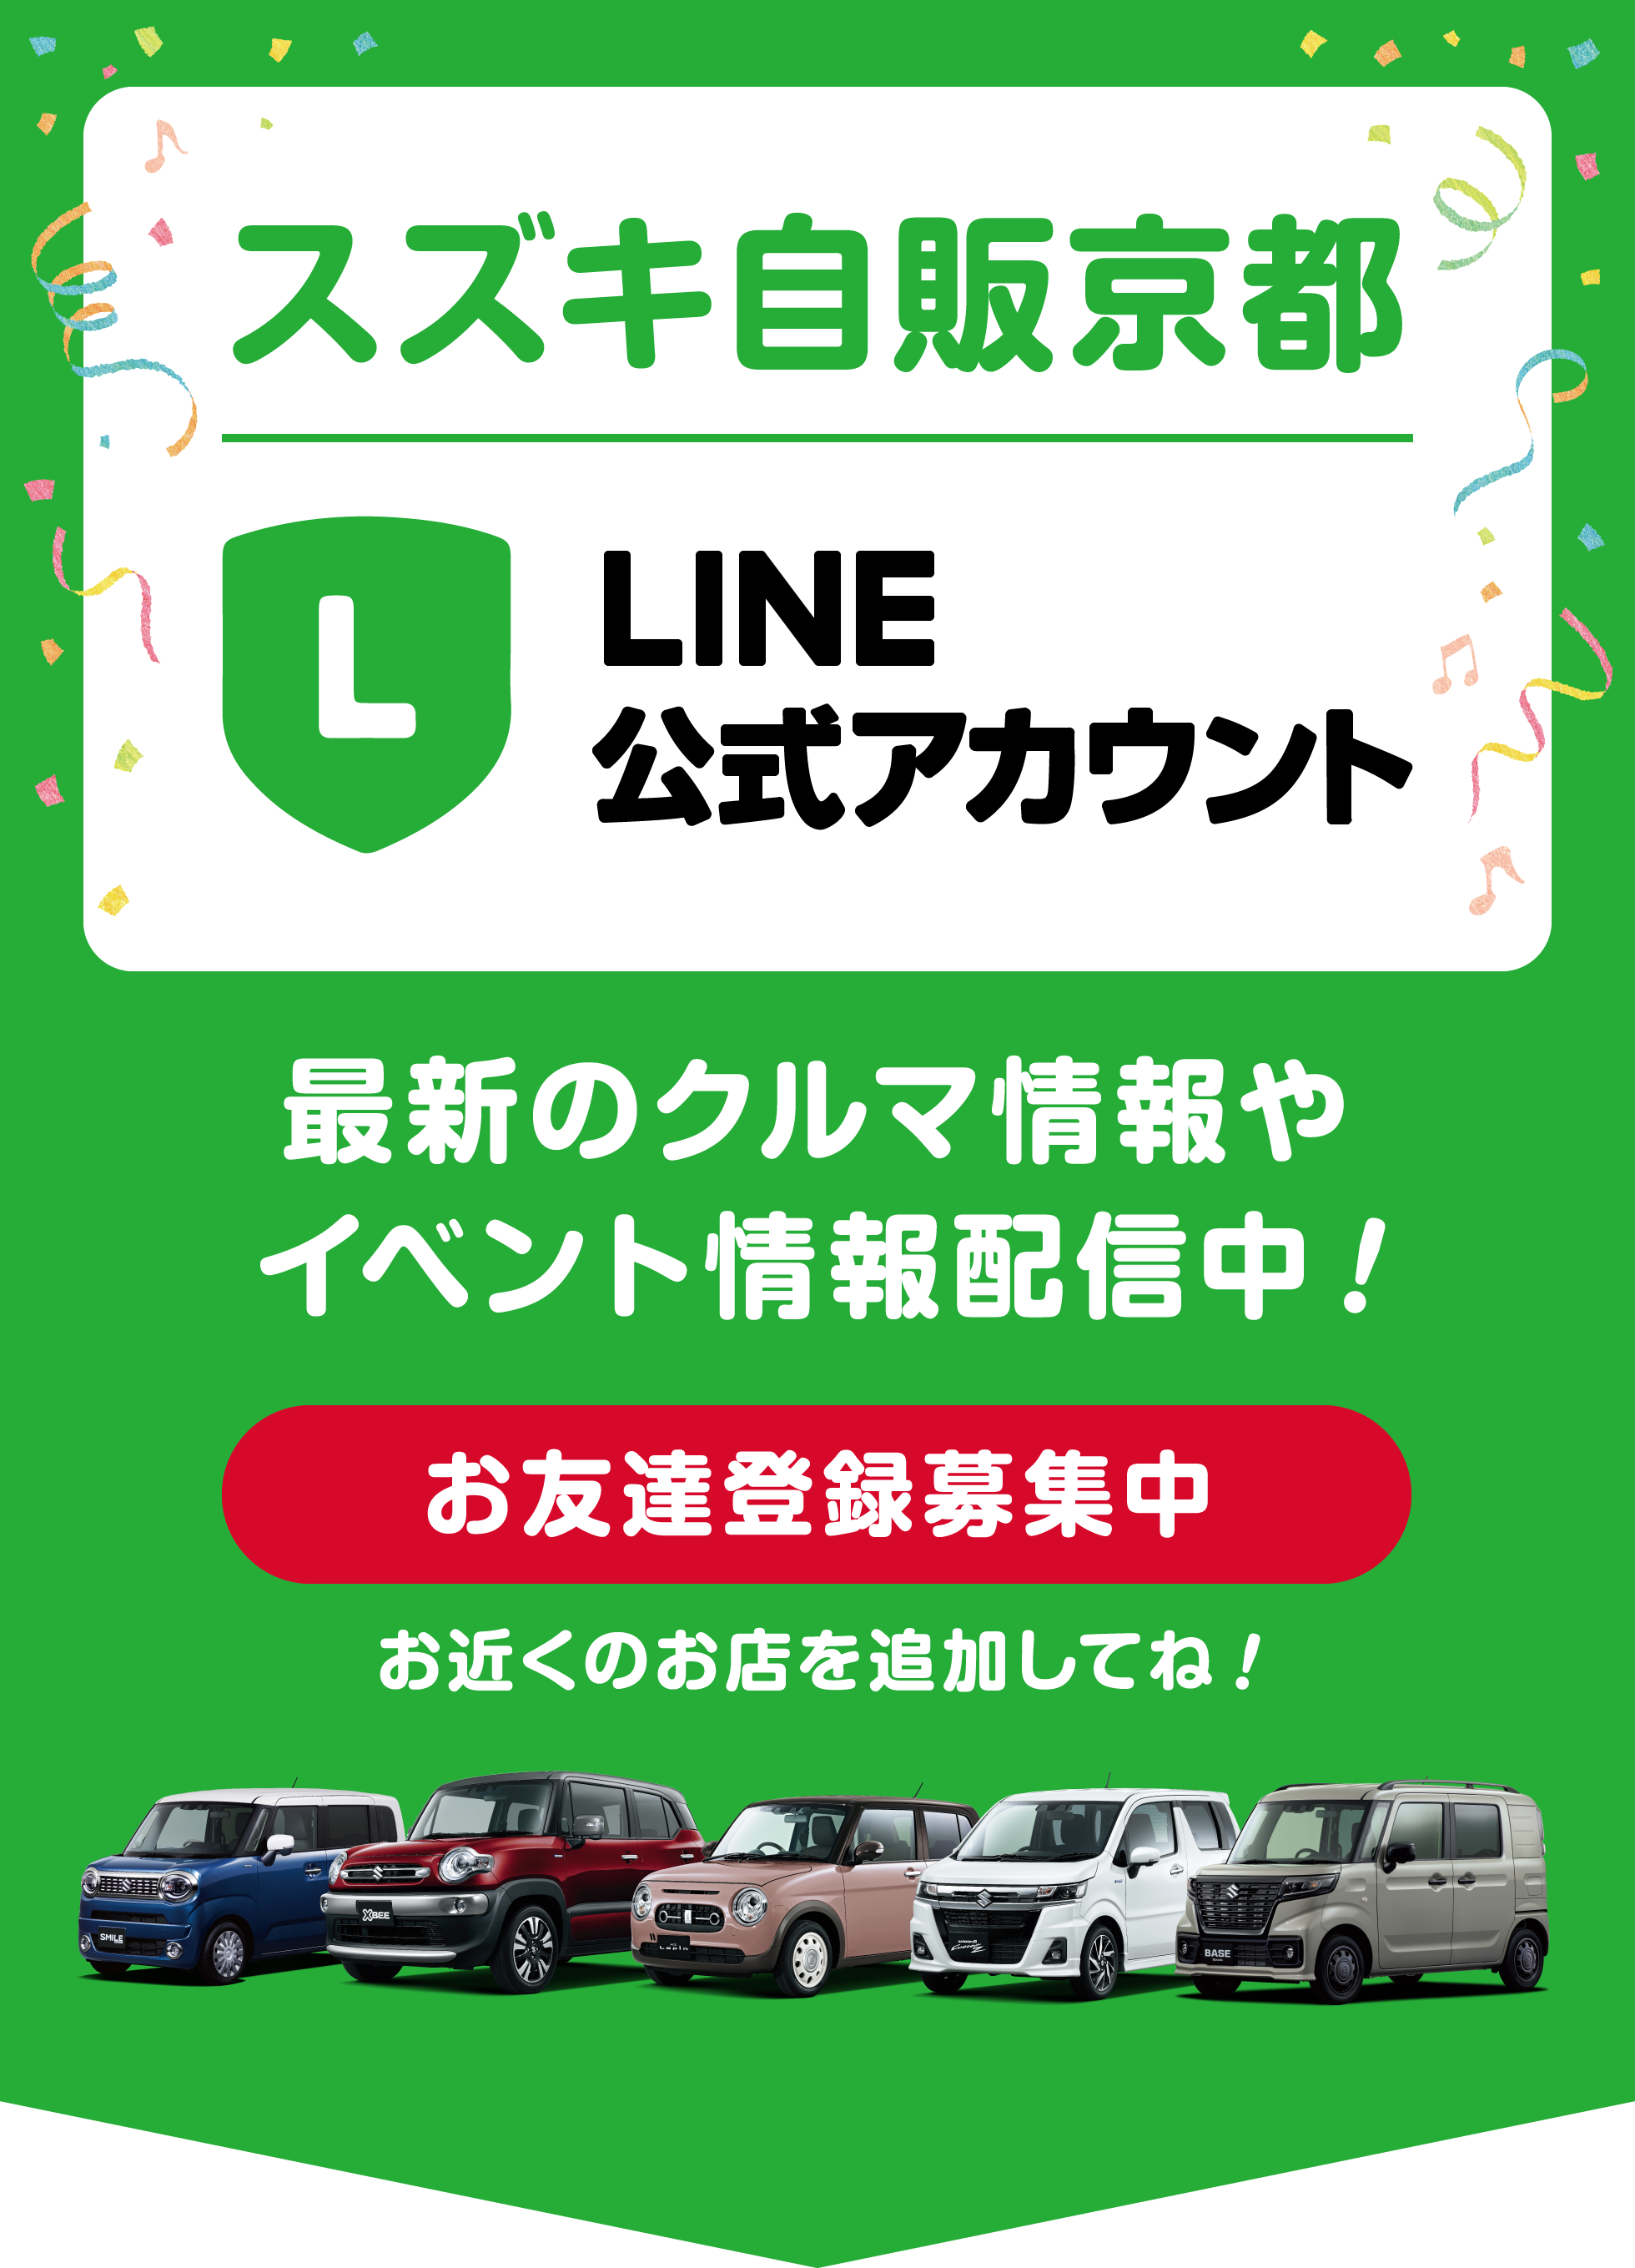 スズキ自販京都 LINE公式アカウント